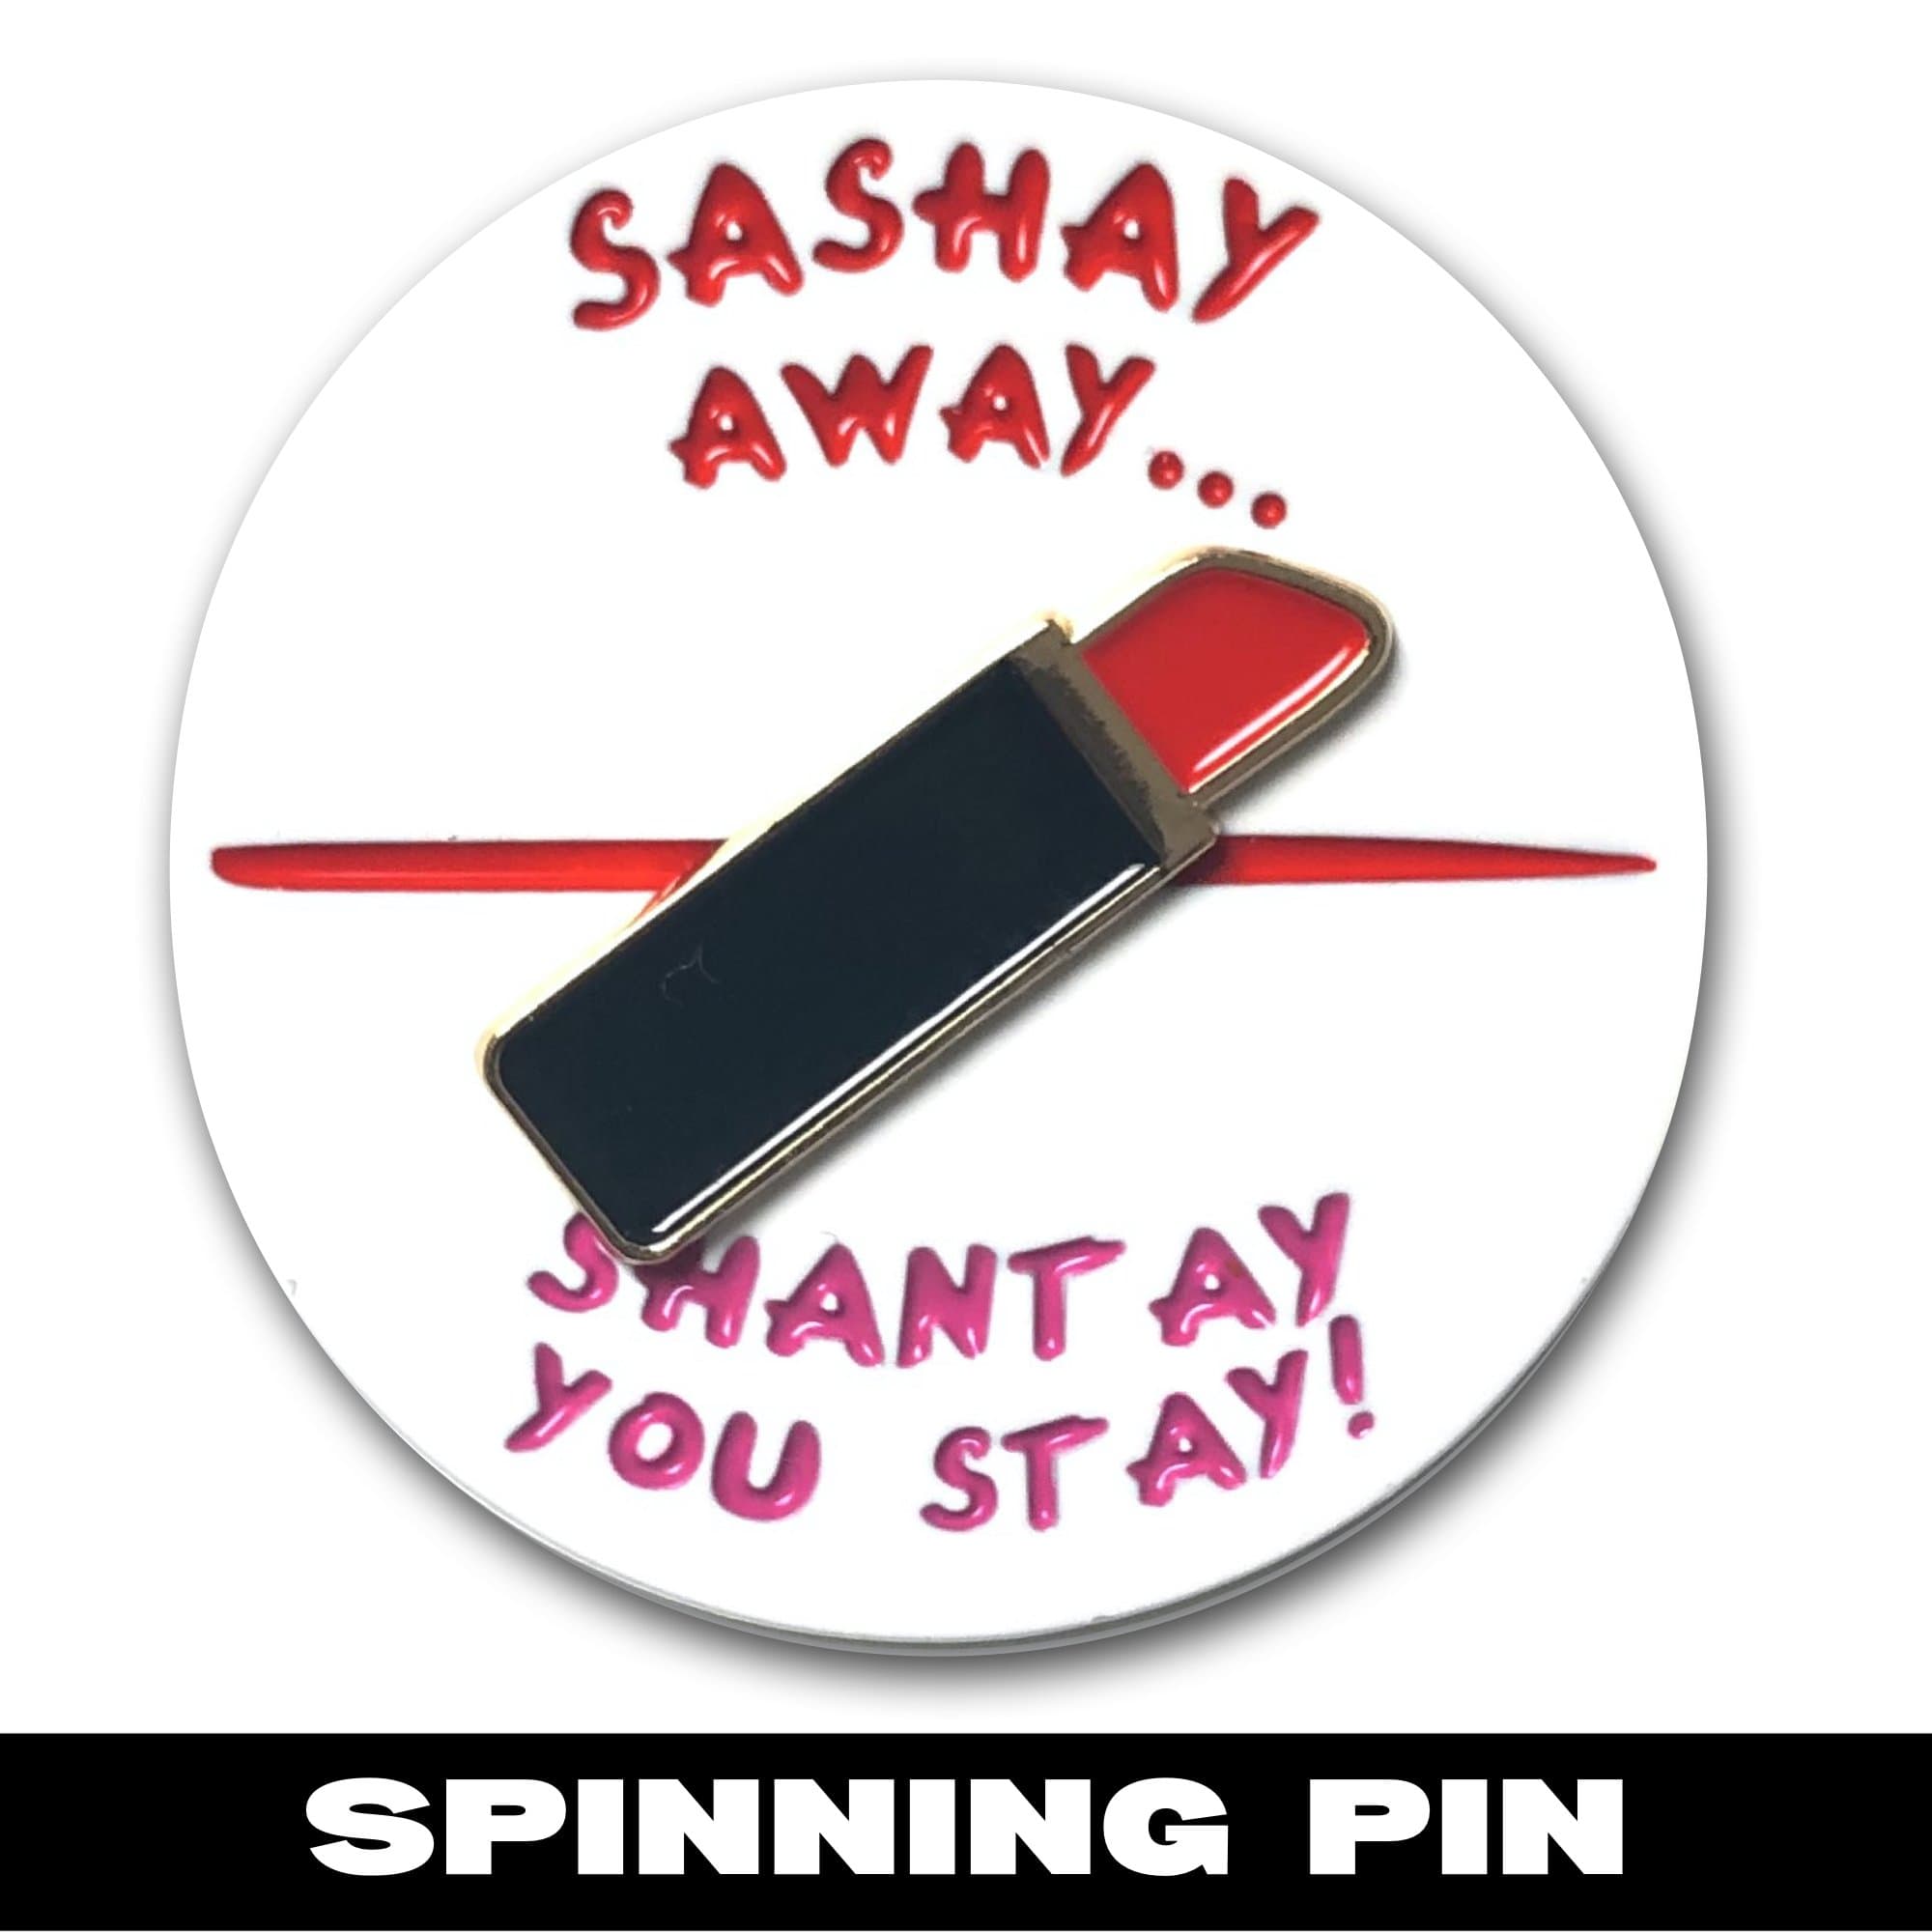 Sashay Shantay Spinning Pin